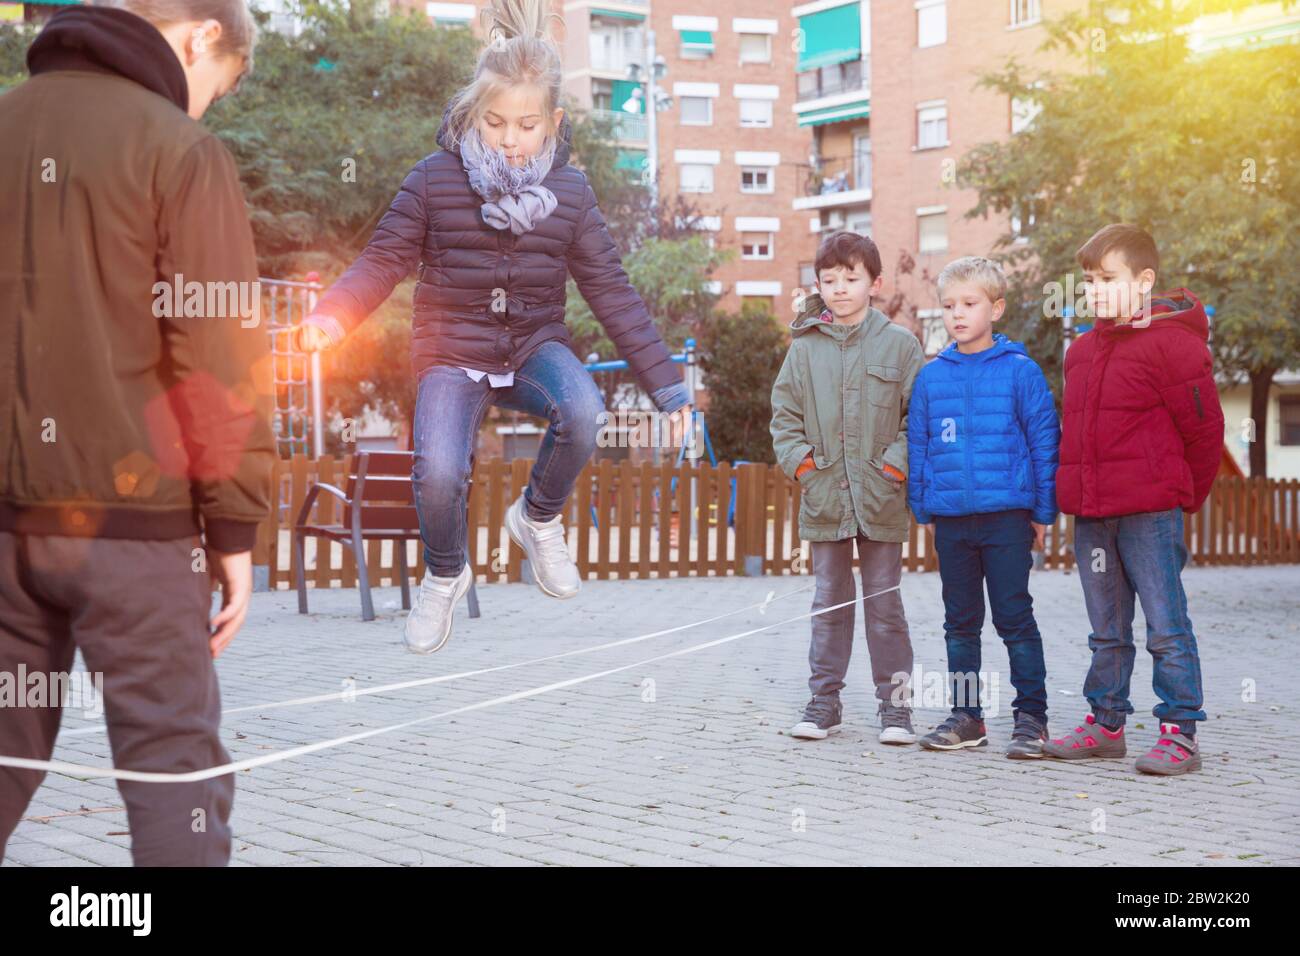 https://c8.alamy.com/compfr/2bw2k20/les-enfants-sauter-a-travers-une-corde-elastique-dans-une-aire-de-jeux-pour-enfants-2bw2k20.jpg